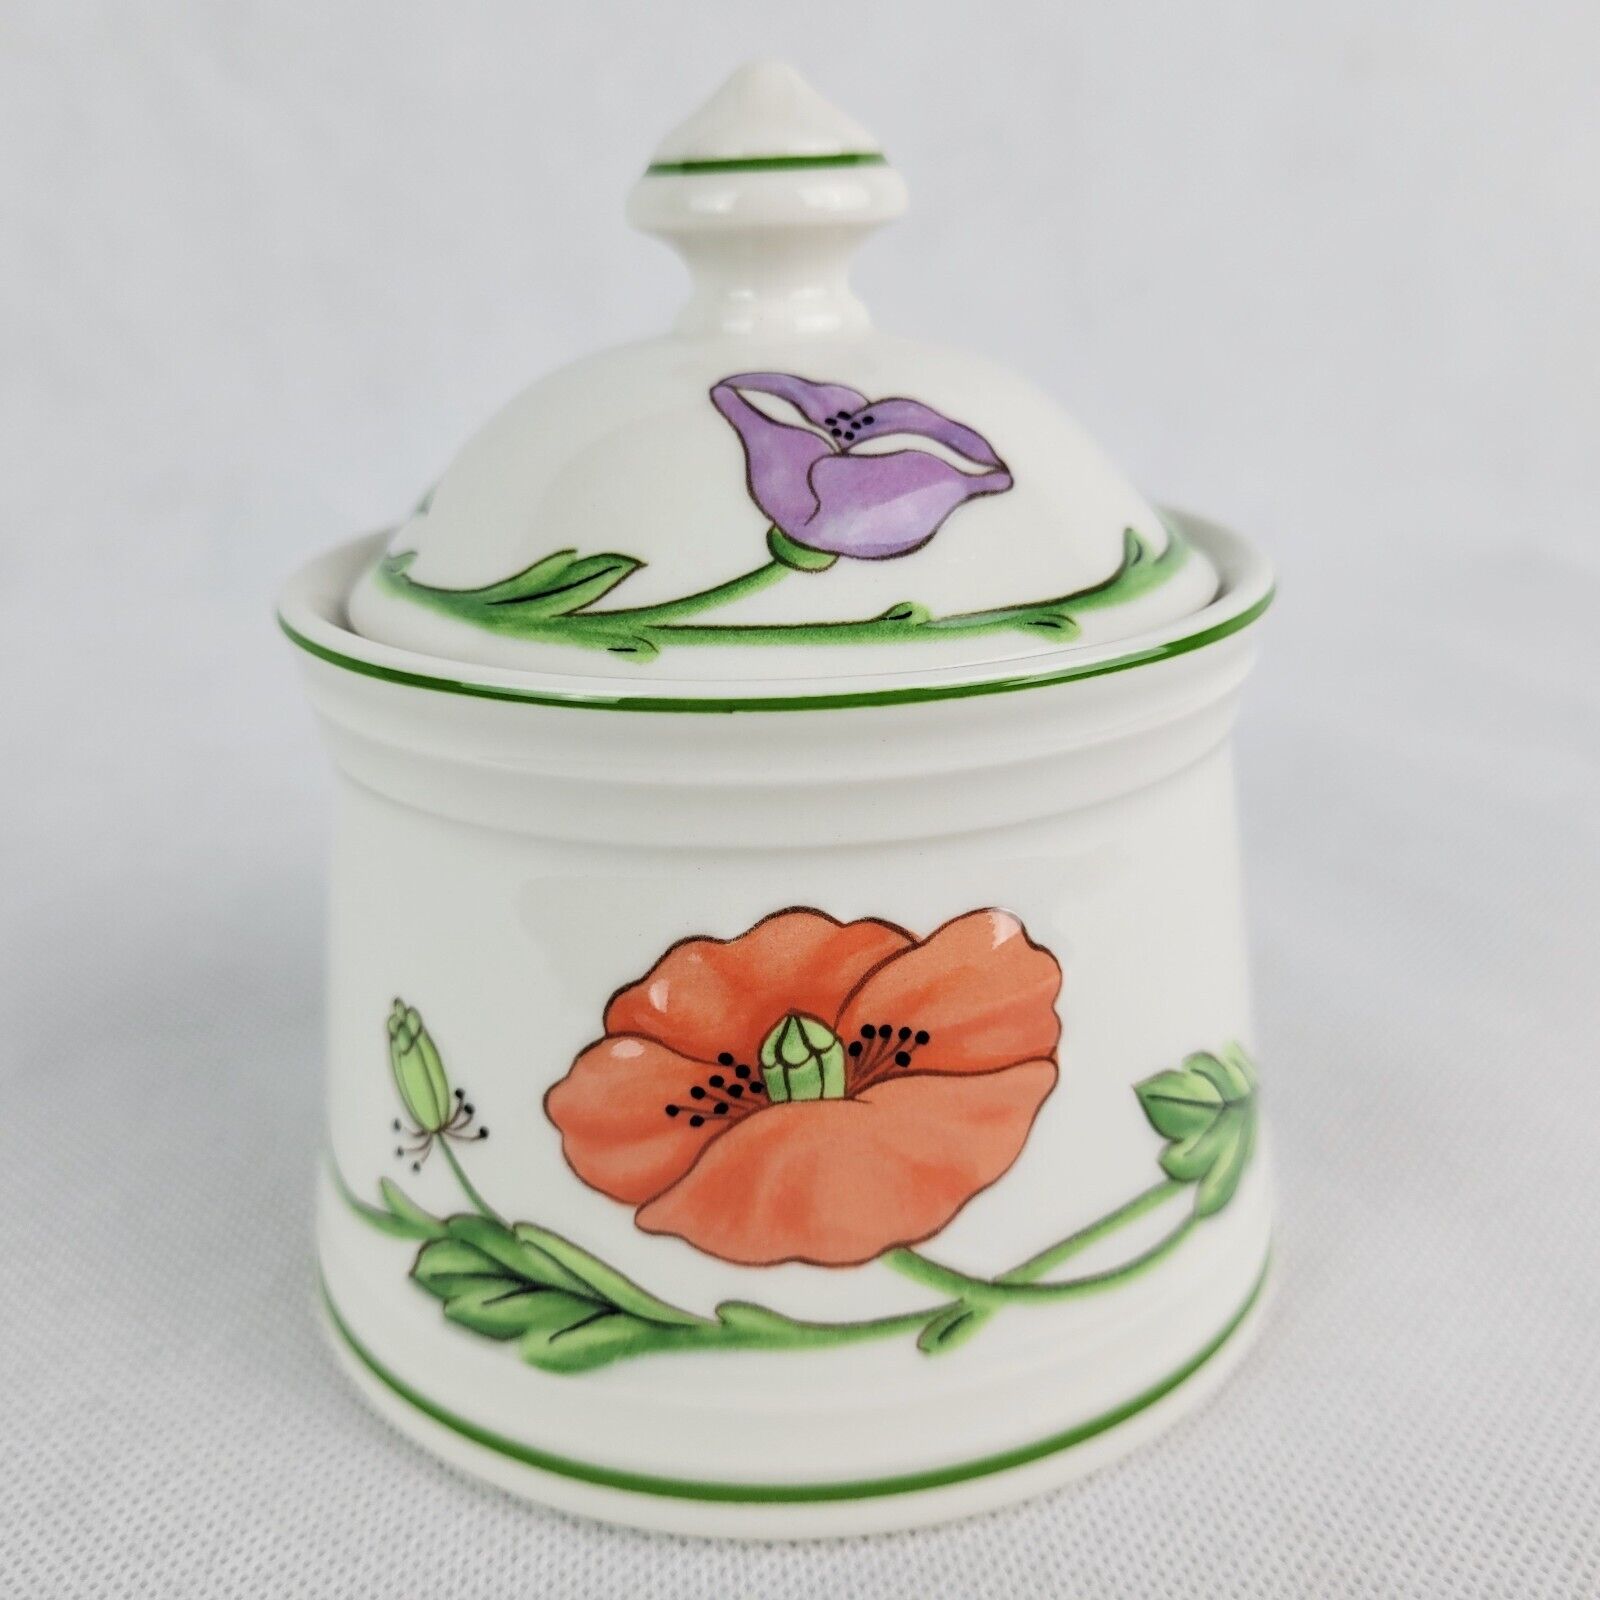 Villeroy & Boch Amapola Sugar Bowl Lidded Poppy Floral Vtg Porcelain Retired